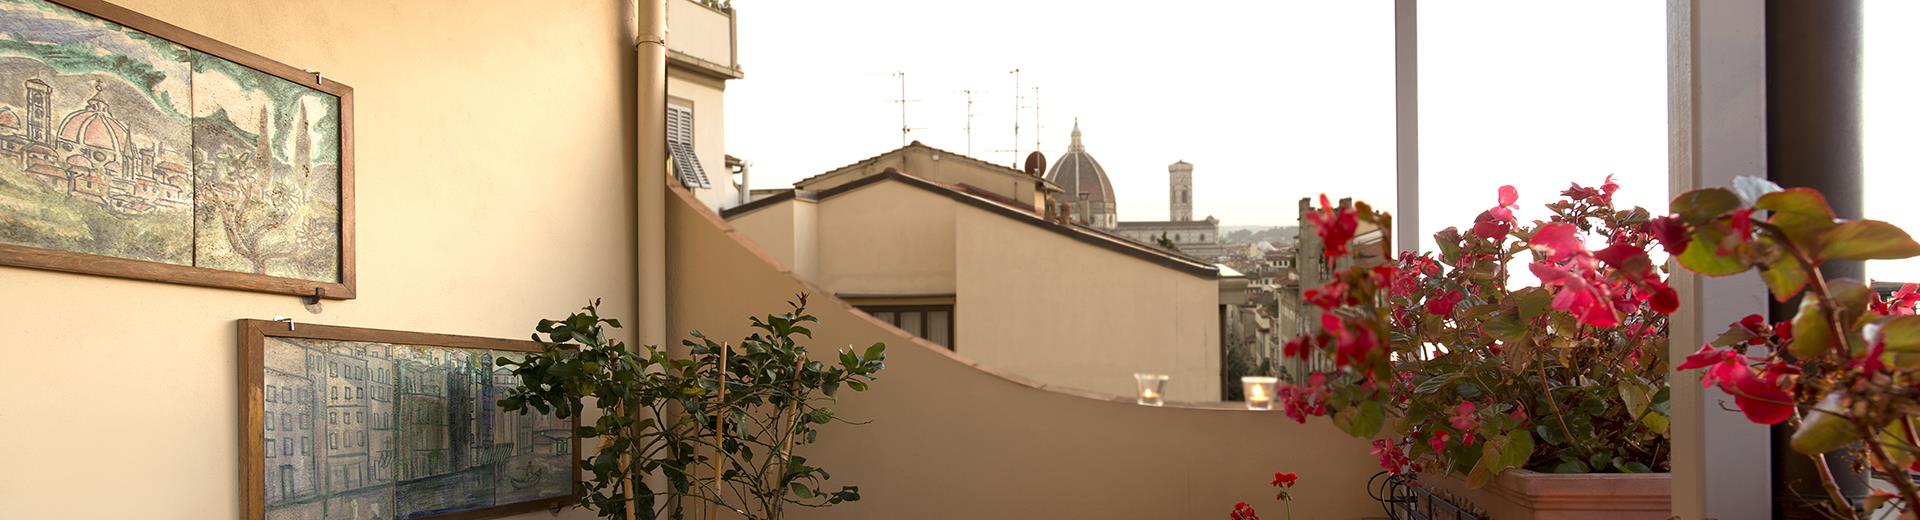 Goditi la splendida vista del Sure Hotel Collection de La Pace, delizioso 4 stelle in centro a Firenze. Prenota subito!